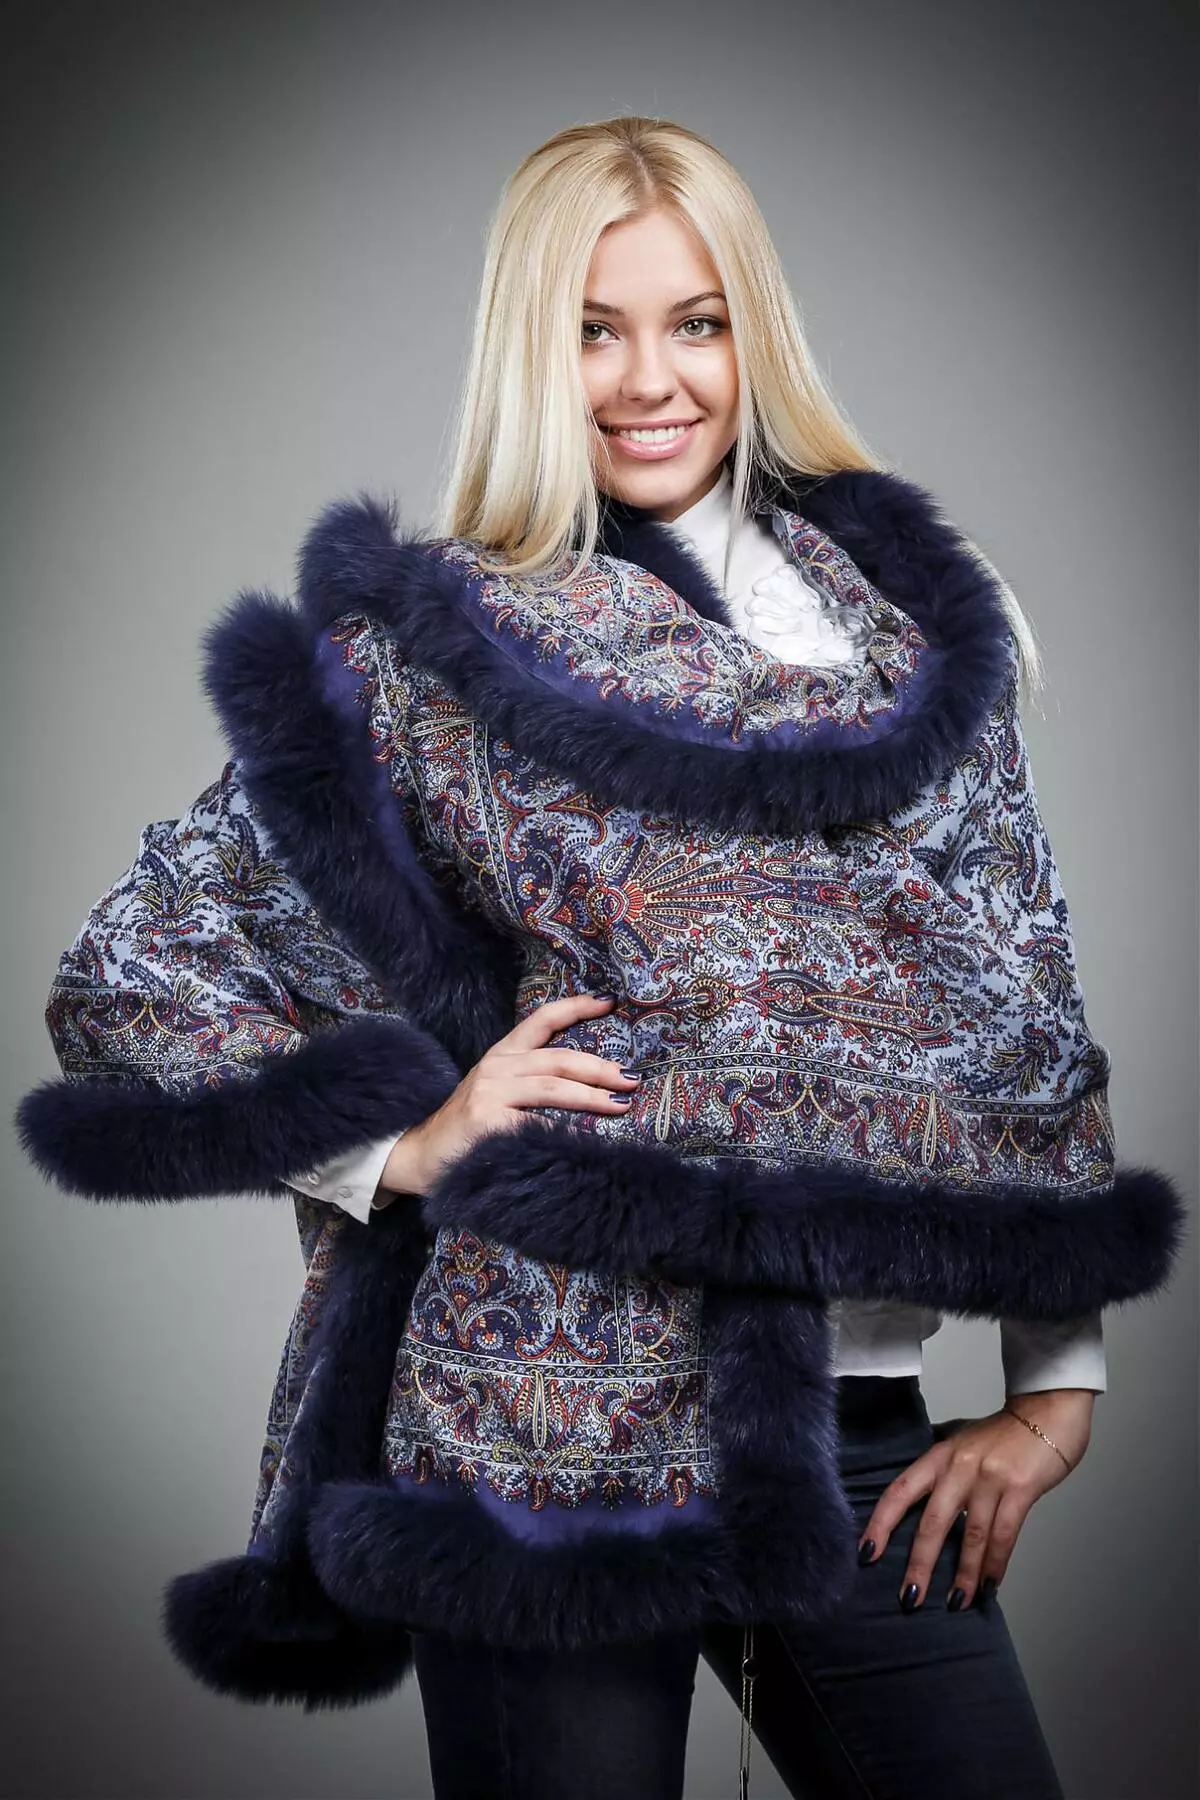 Mantel von Pavloposad-Muschaten (29 Fotos): Binden Sie ein pavelopospalstiges Taschentuch auf einen Mantel 484_17